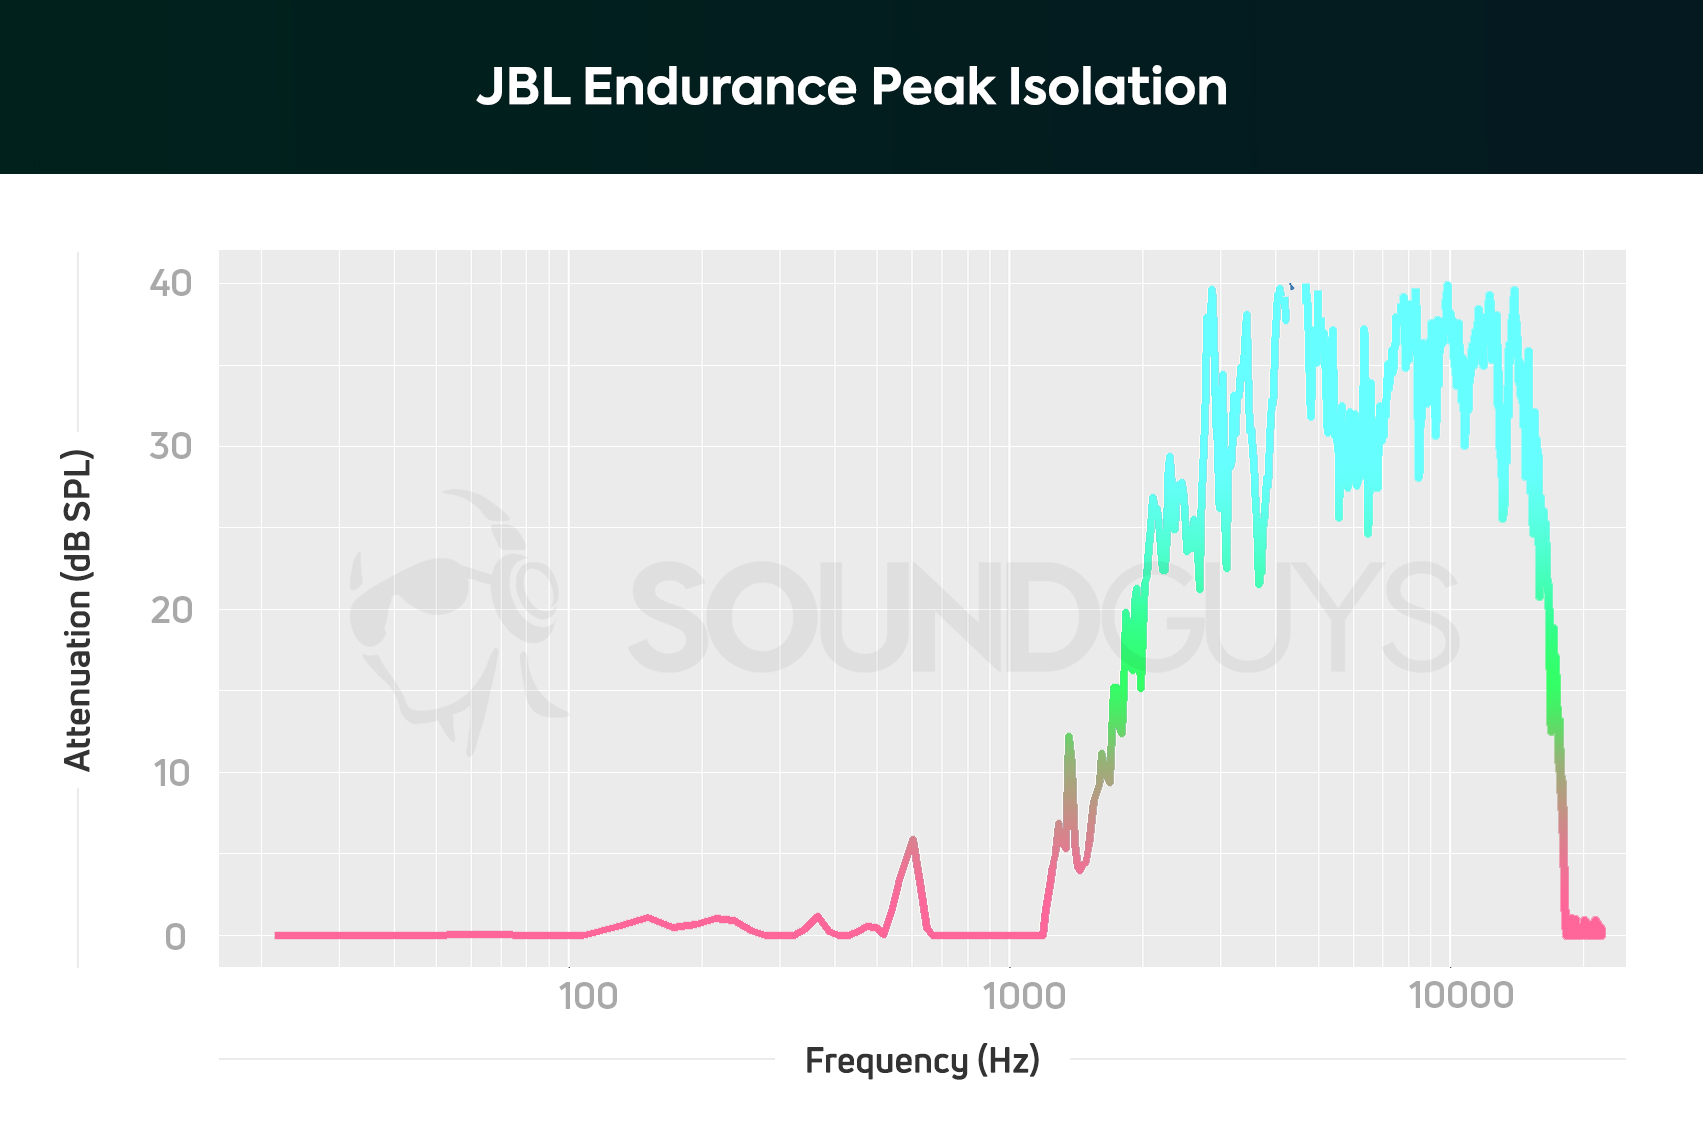 JBL Endurance Peak isolation chart.